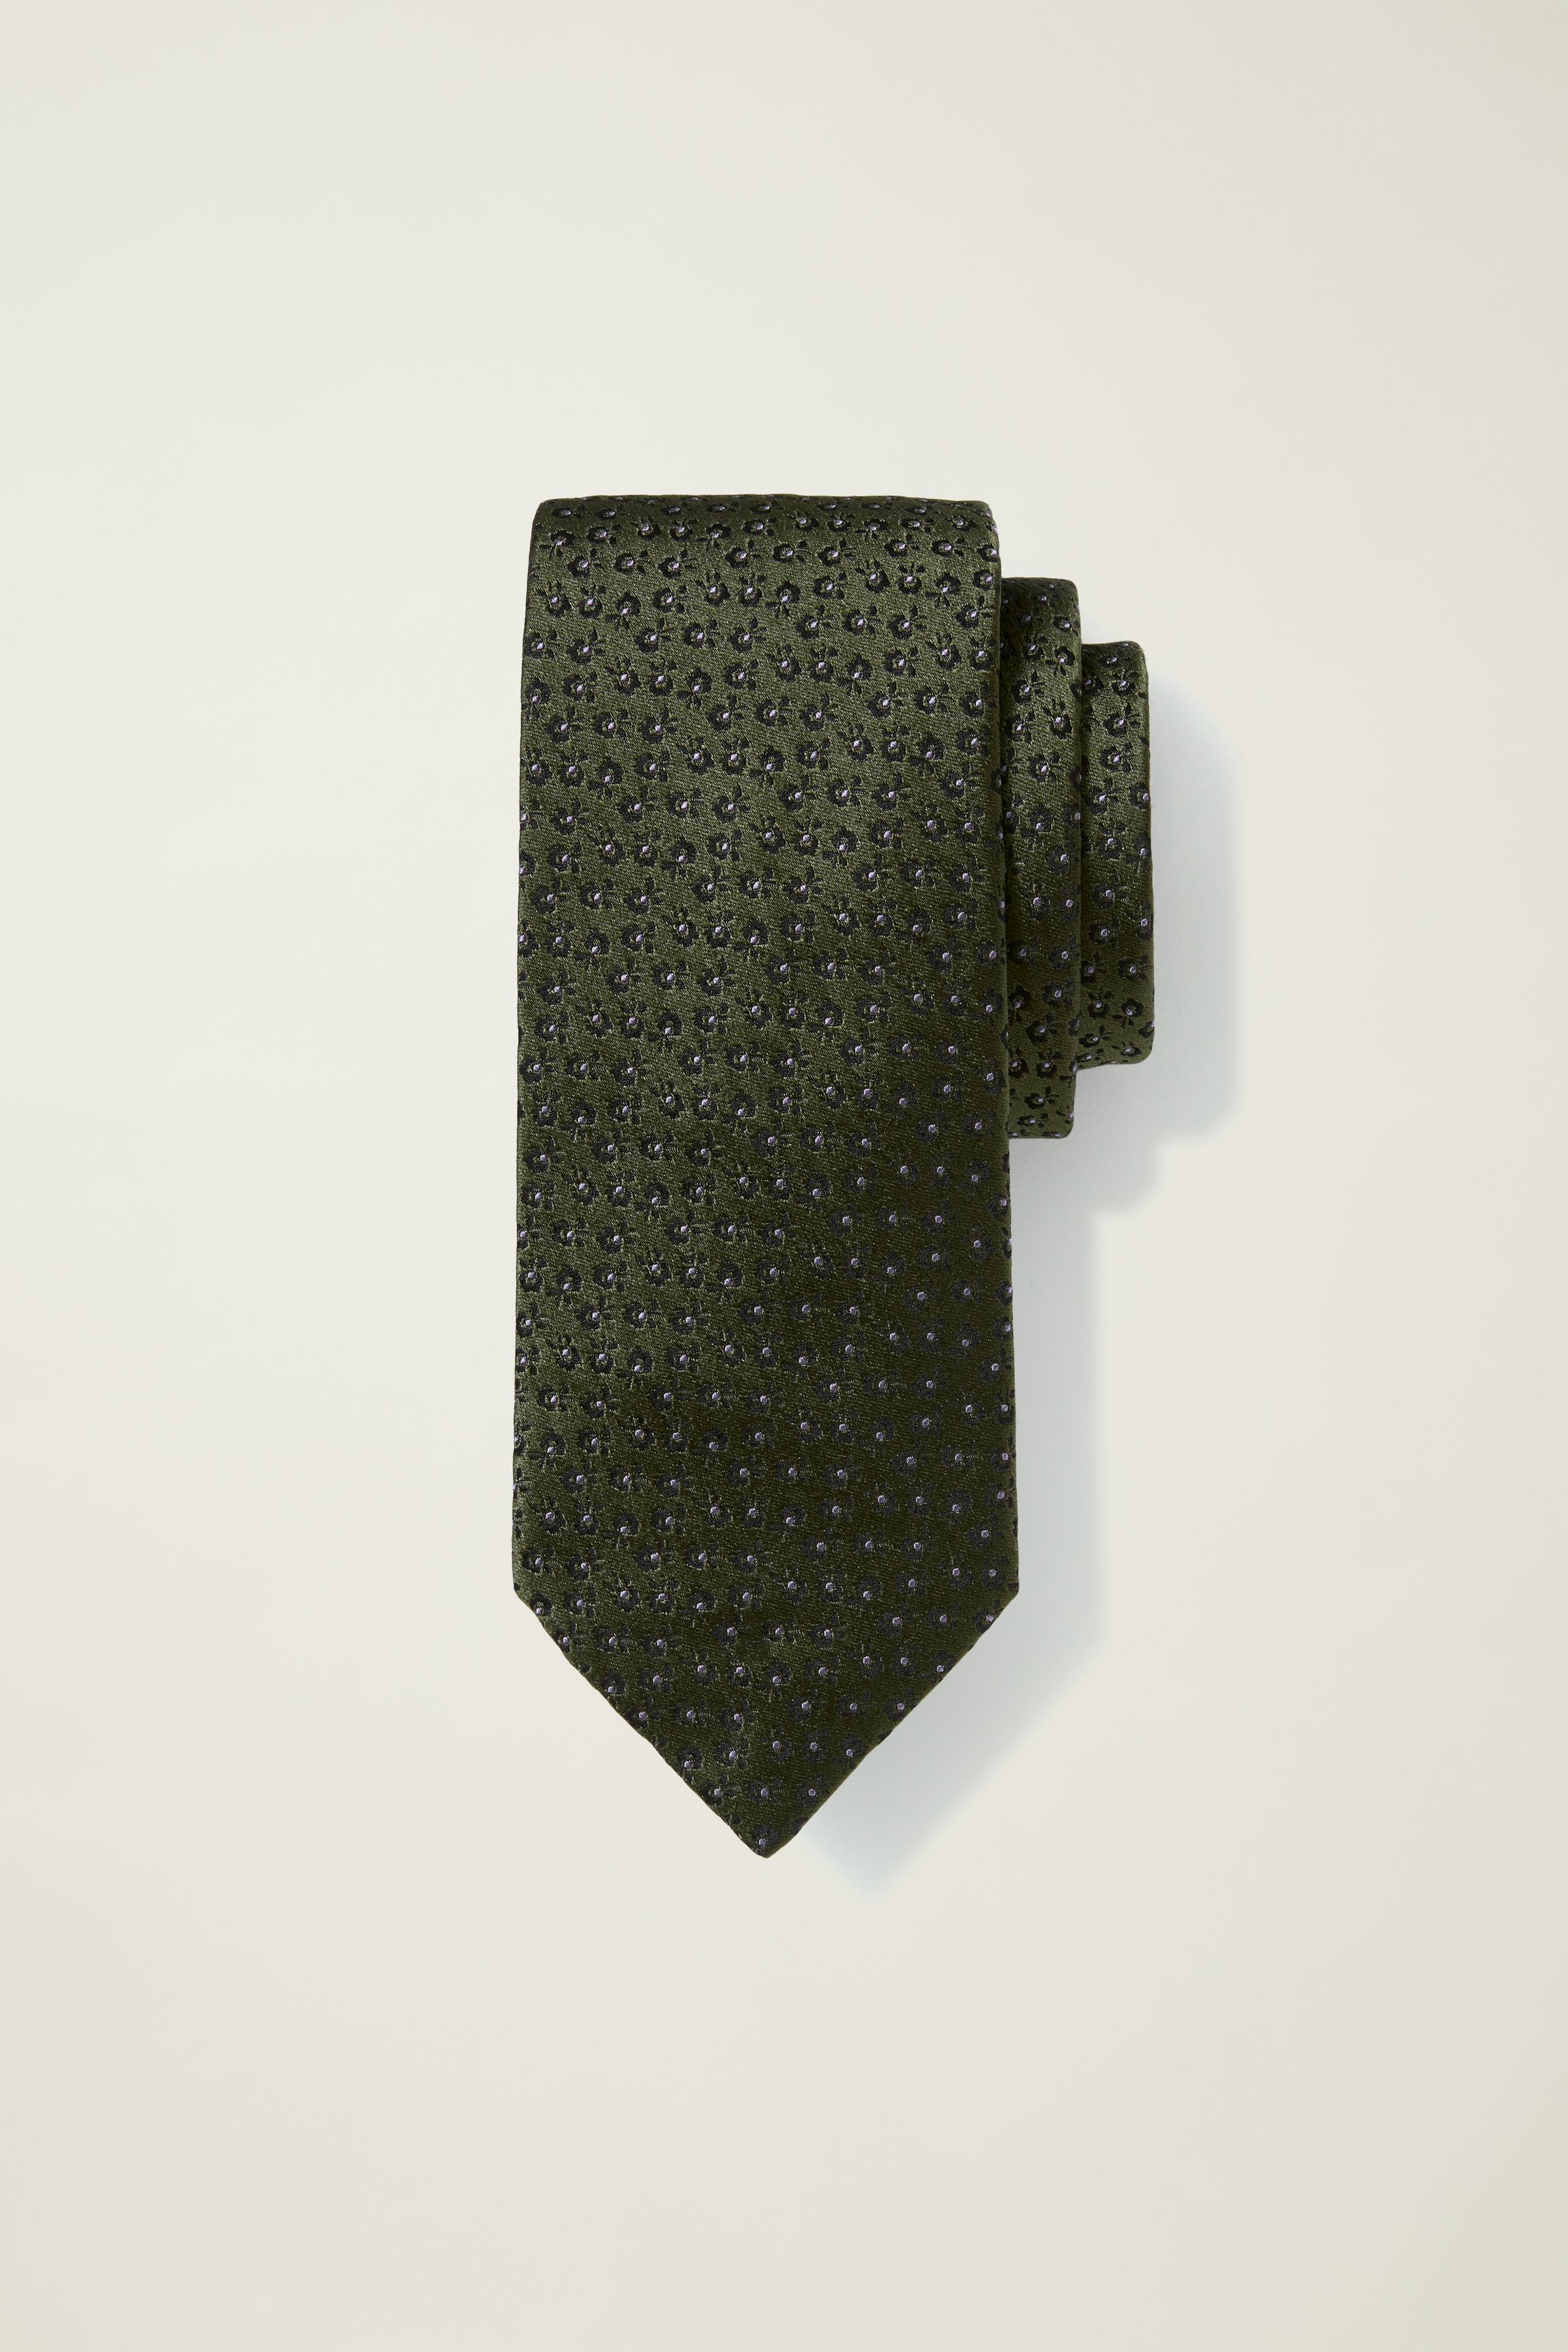 Premium Necktie